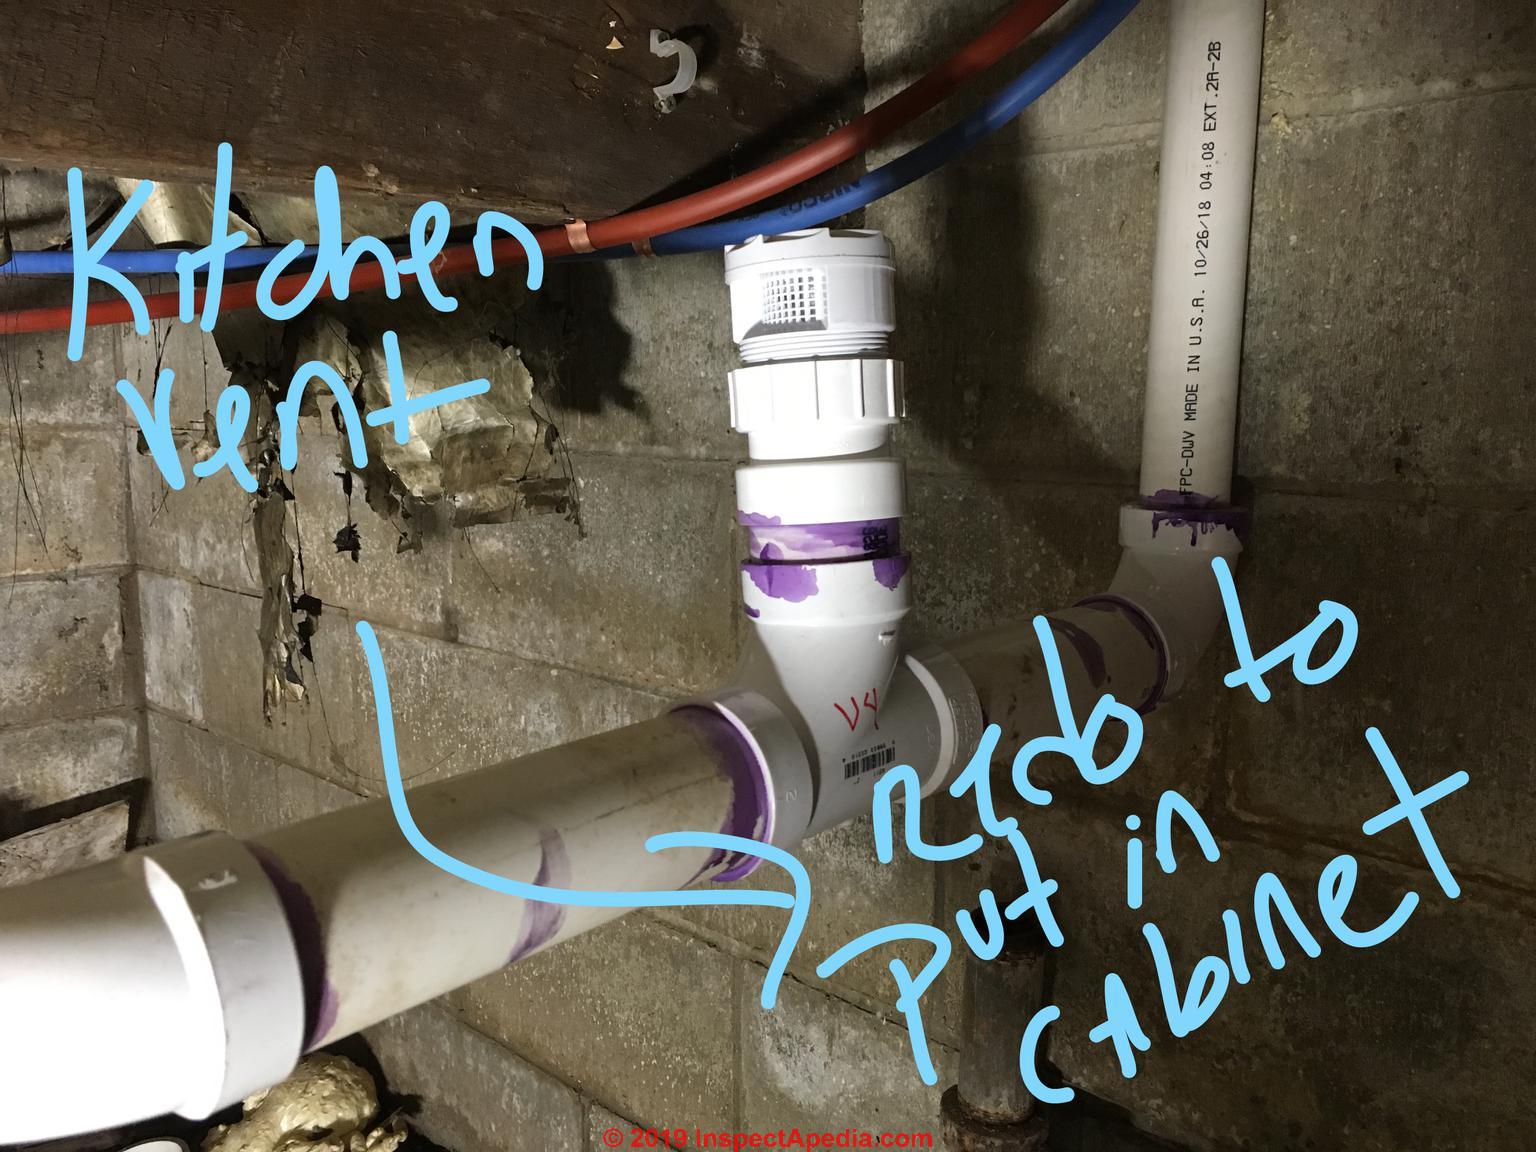 kitchen sink air admittance valve leaking water